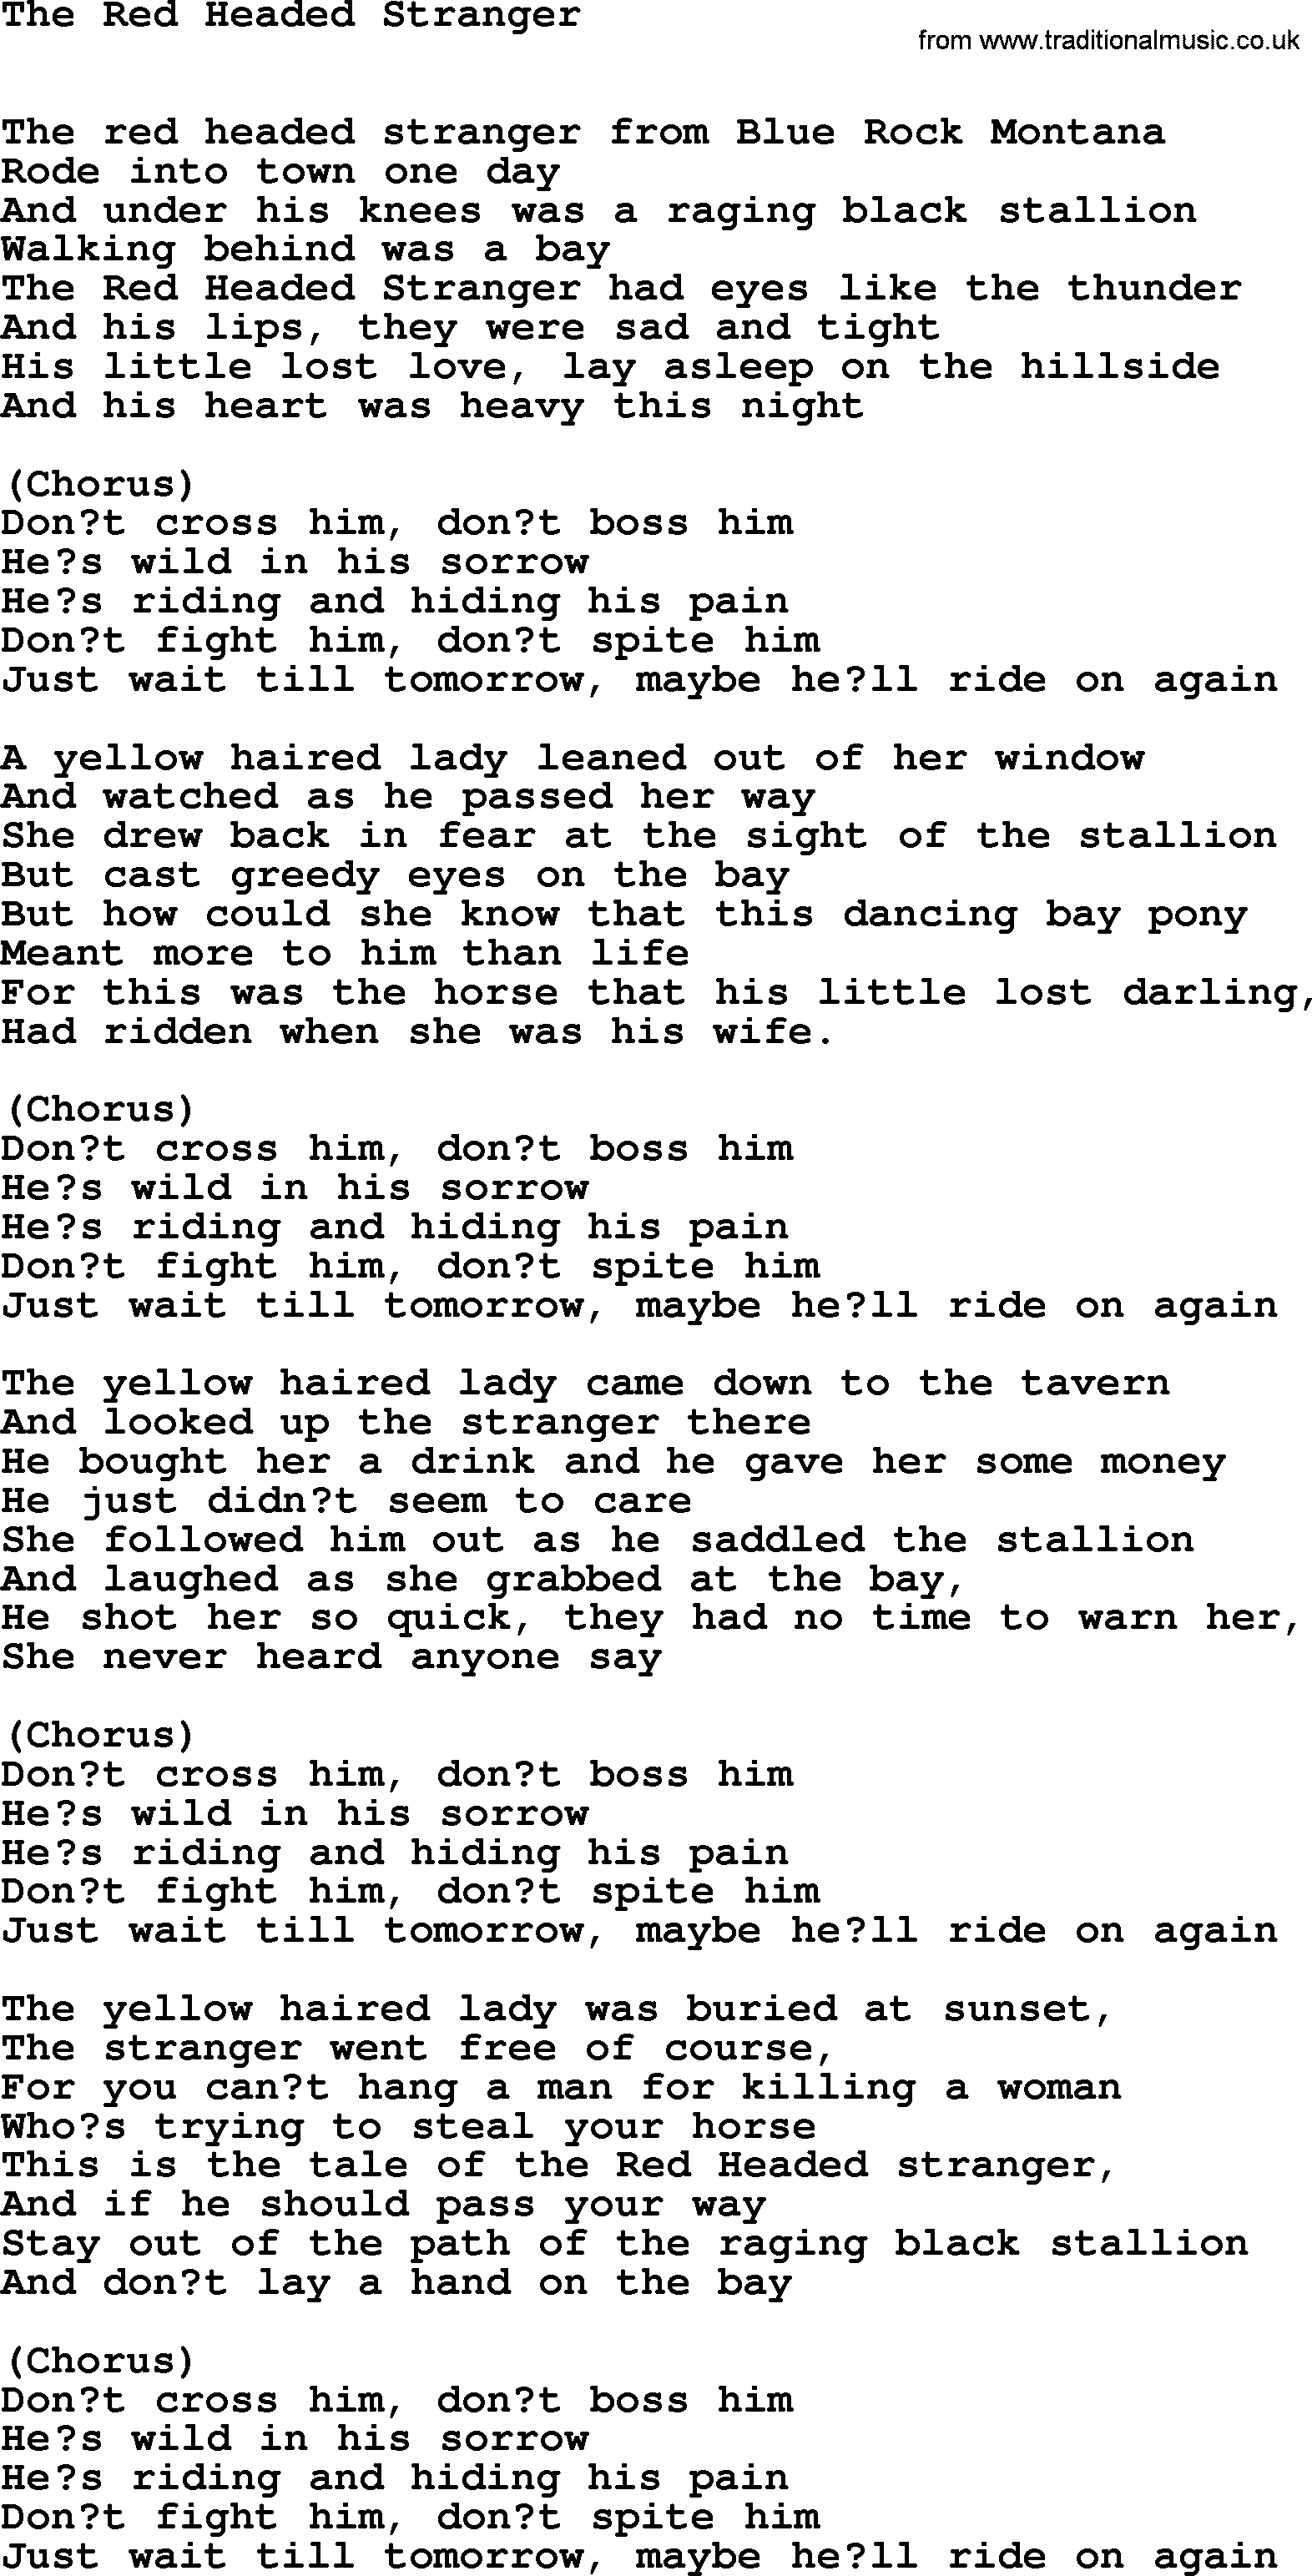 Willie Nelson song: The Red Headed Stranger lyrics